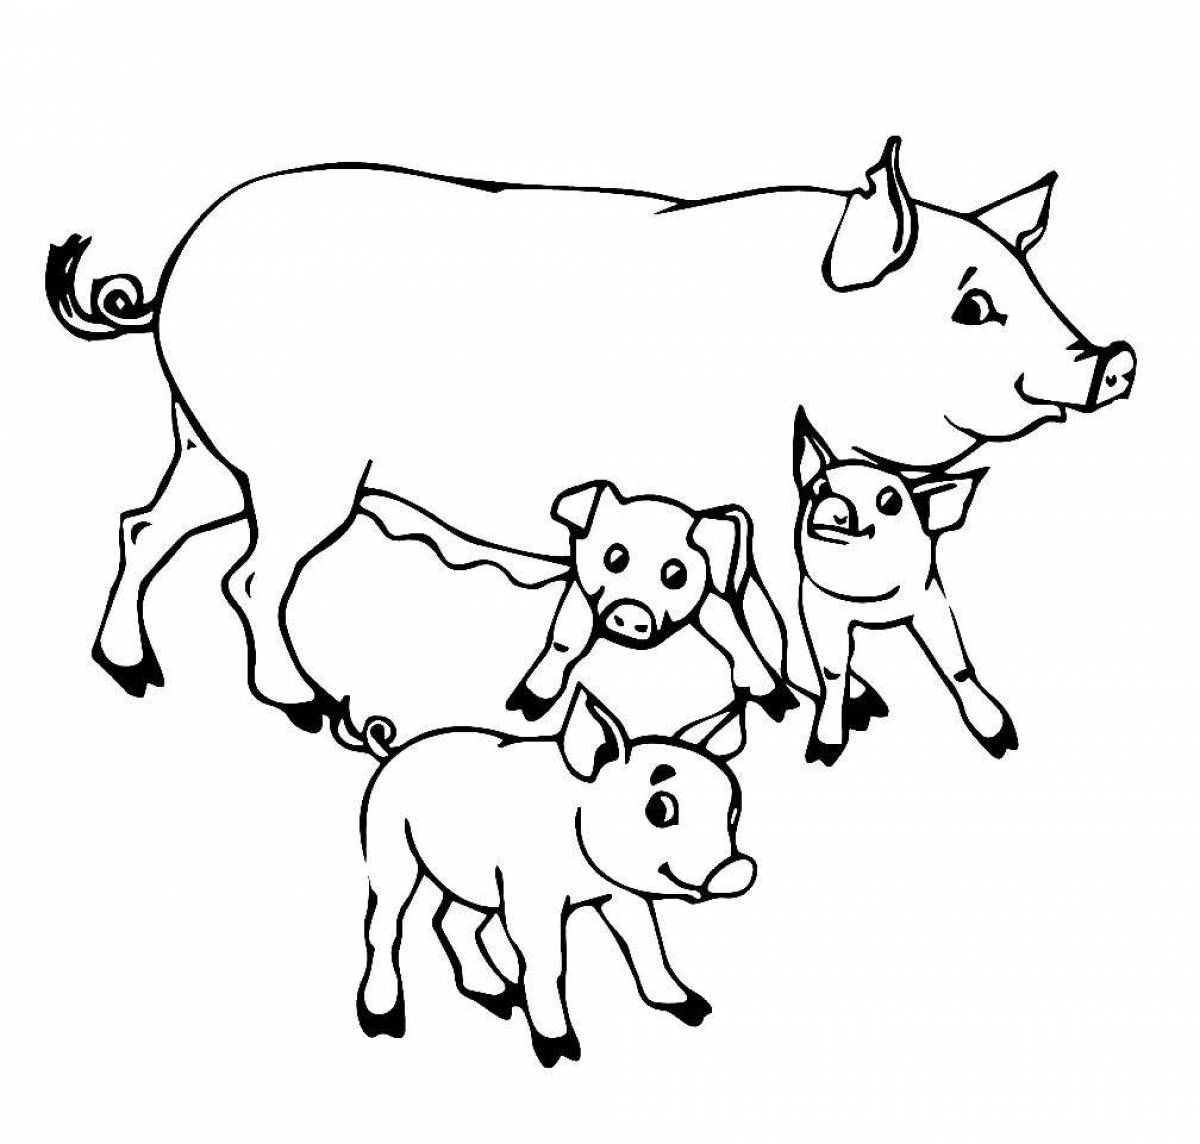 Увлекательная раскраска домашних животных для детей 2-3 лет